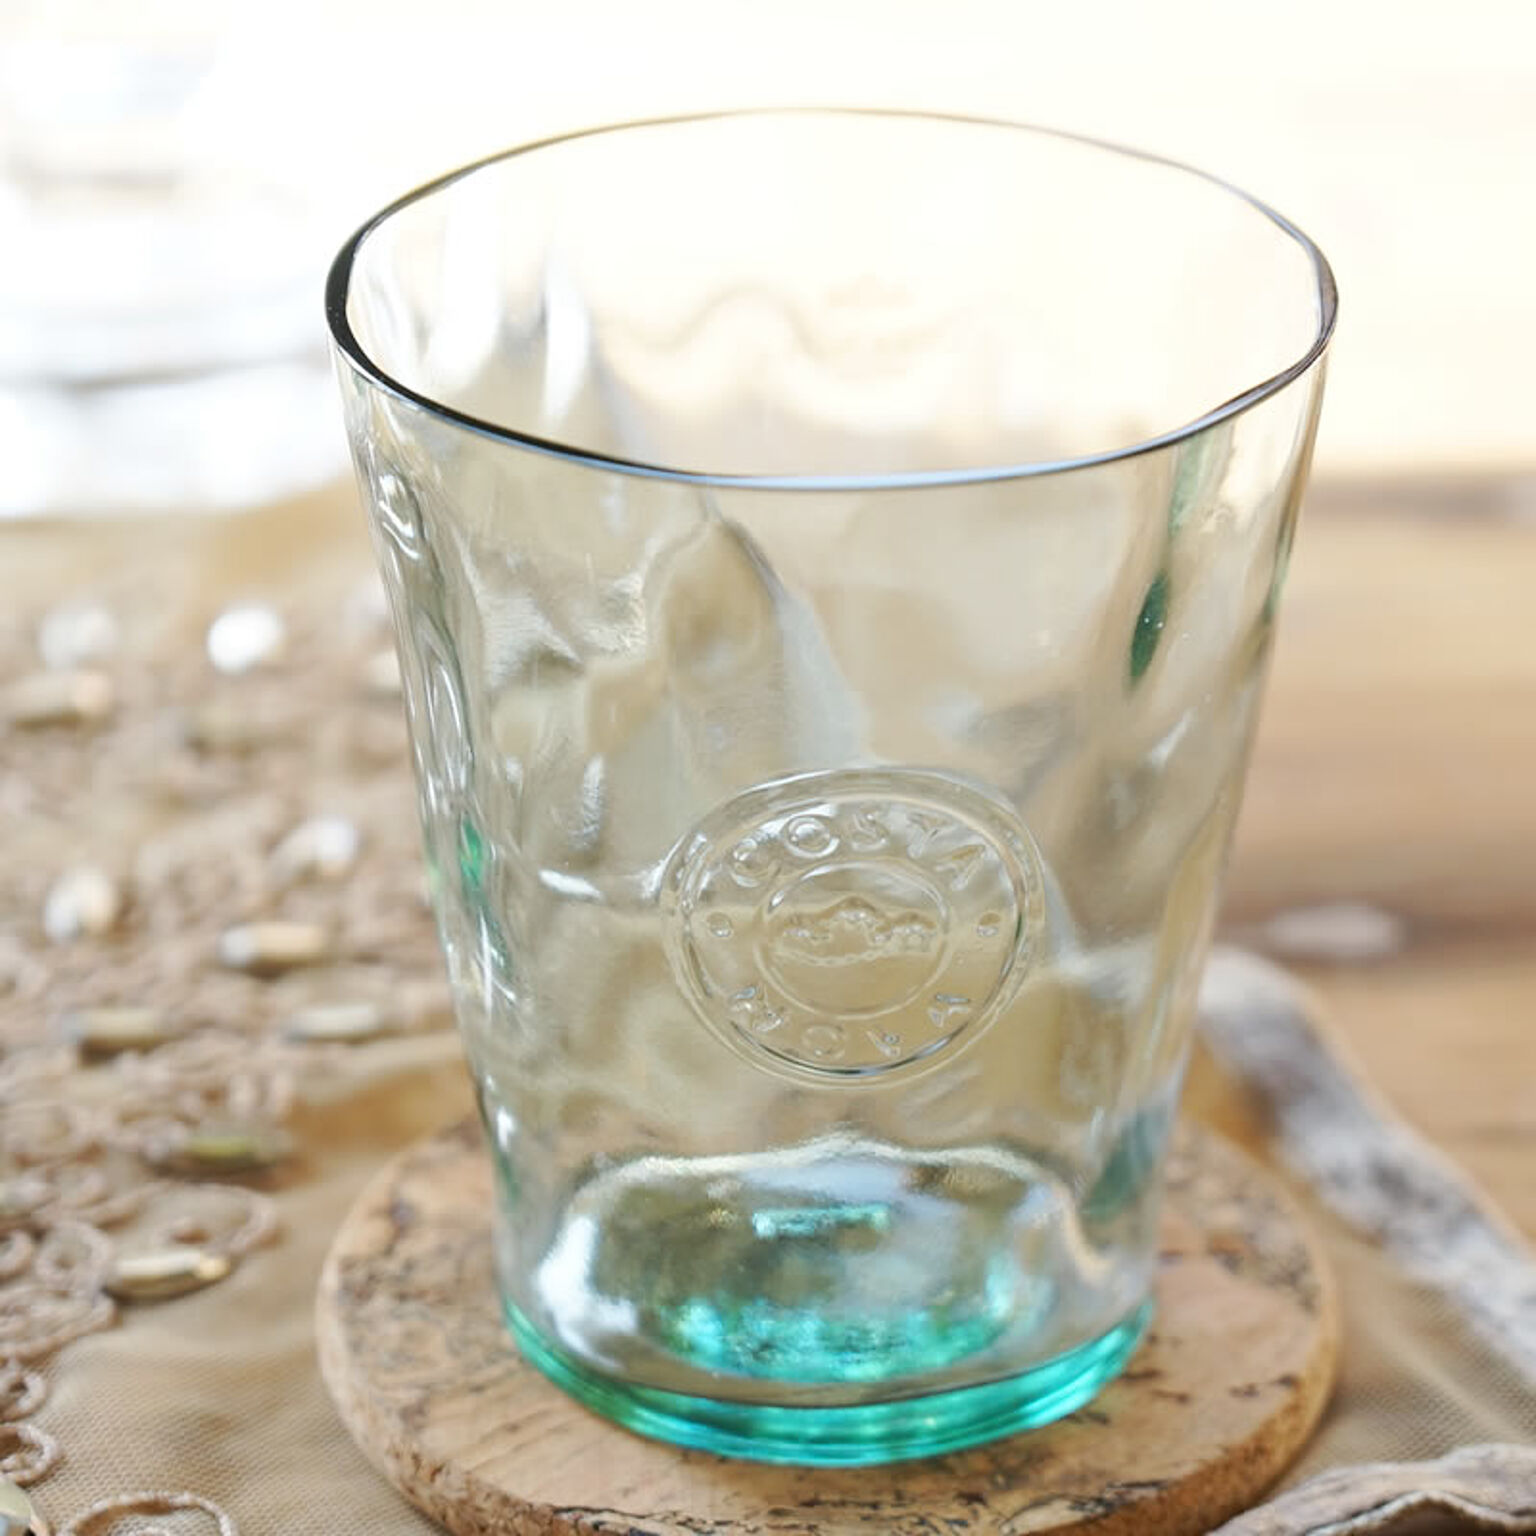 COSTA NOVA コスタノバ タンブラー グリーン色 ポルトガル製 ガラス製 グラス おしゃれ テーブルウェア 食器